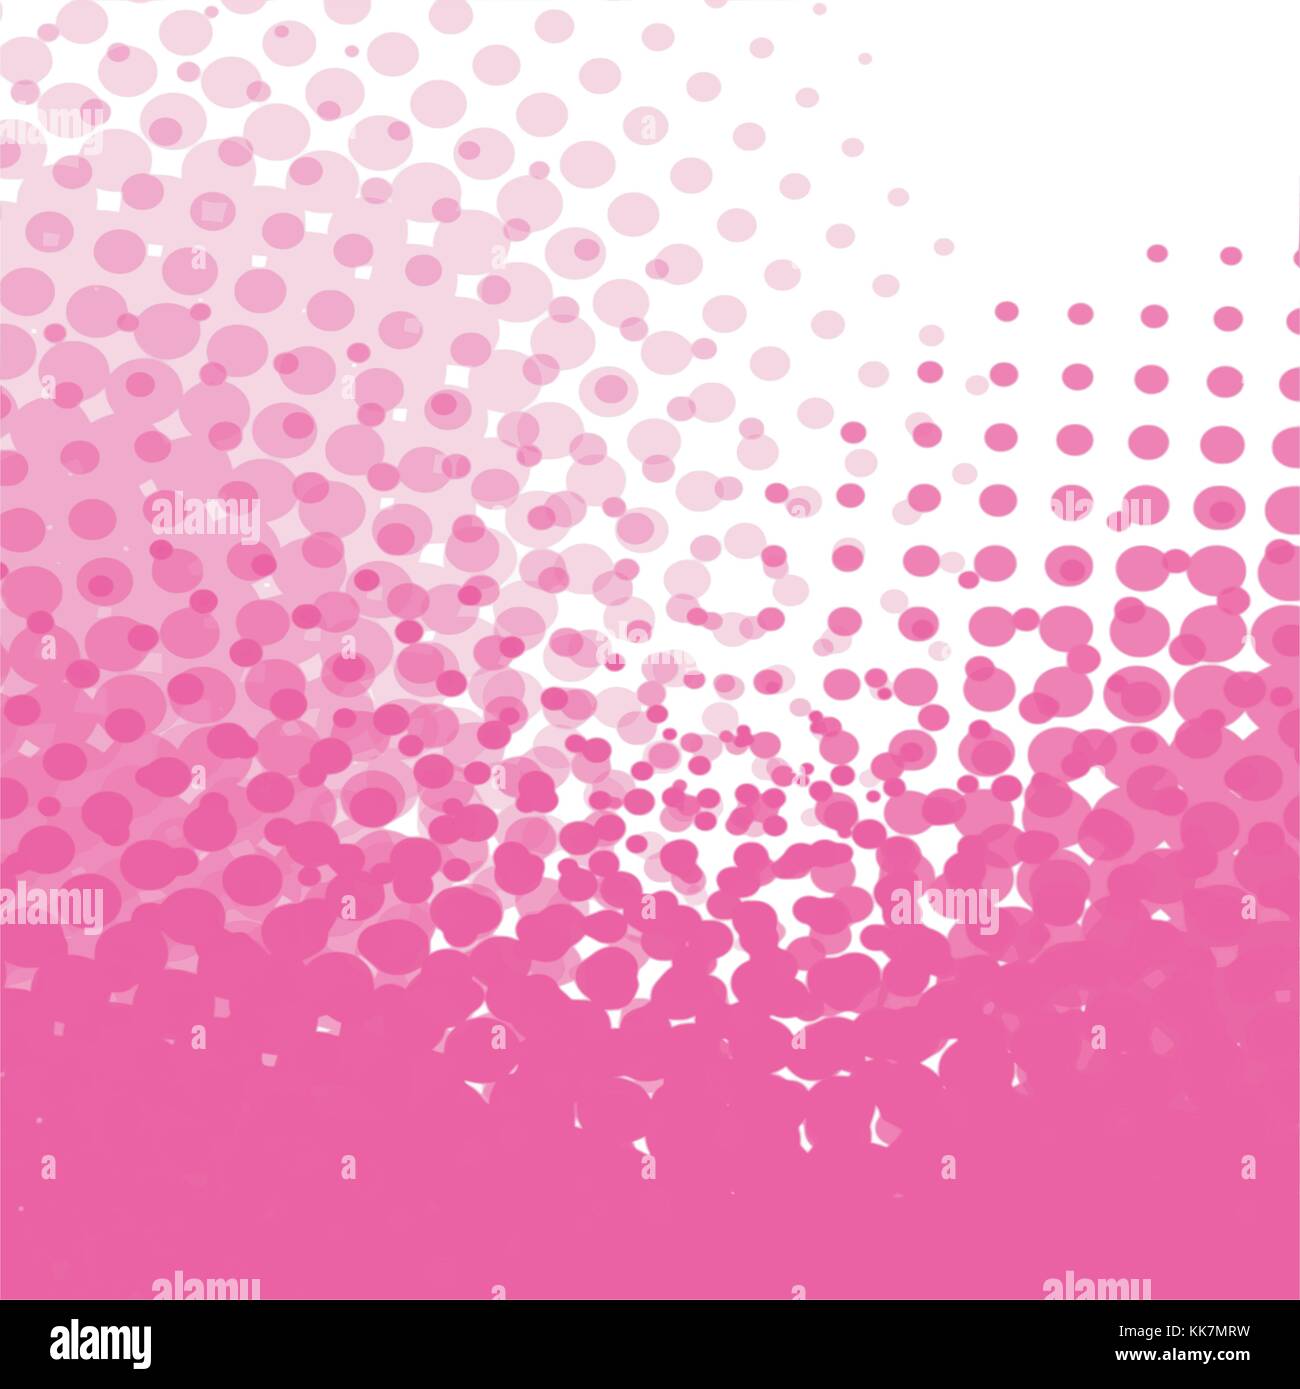 Hot Pink abstraktes Aquarell raster Dot Pattern mit Fading, Vektor, Abbildung Stock Vektor